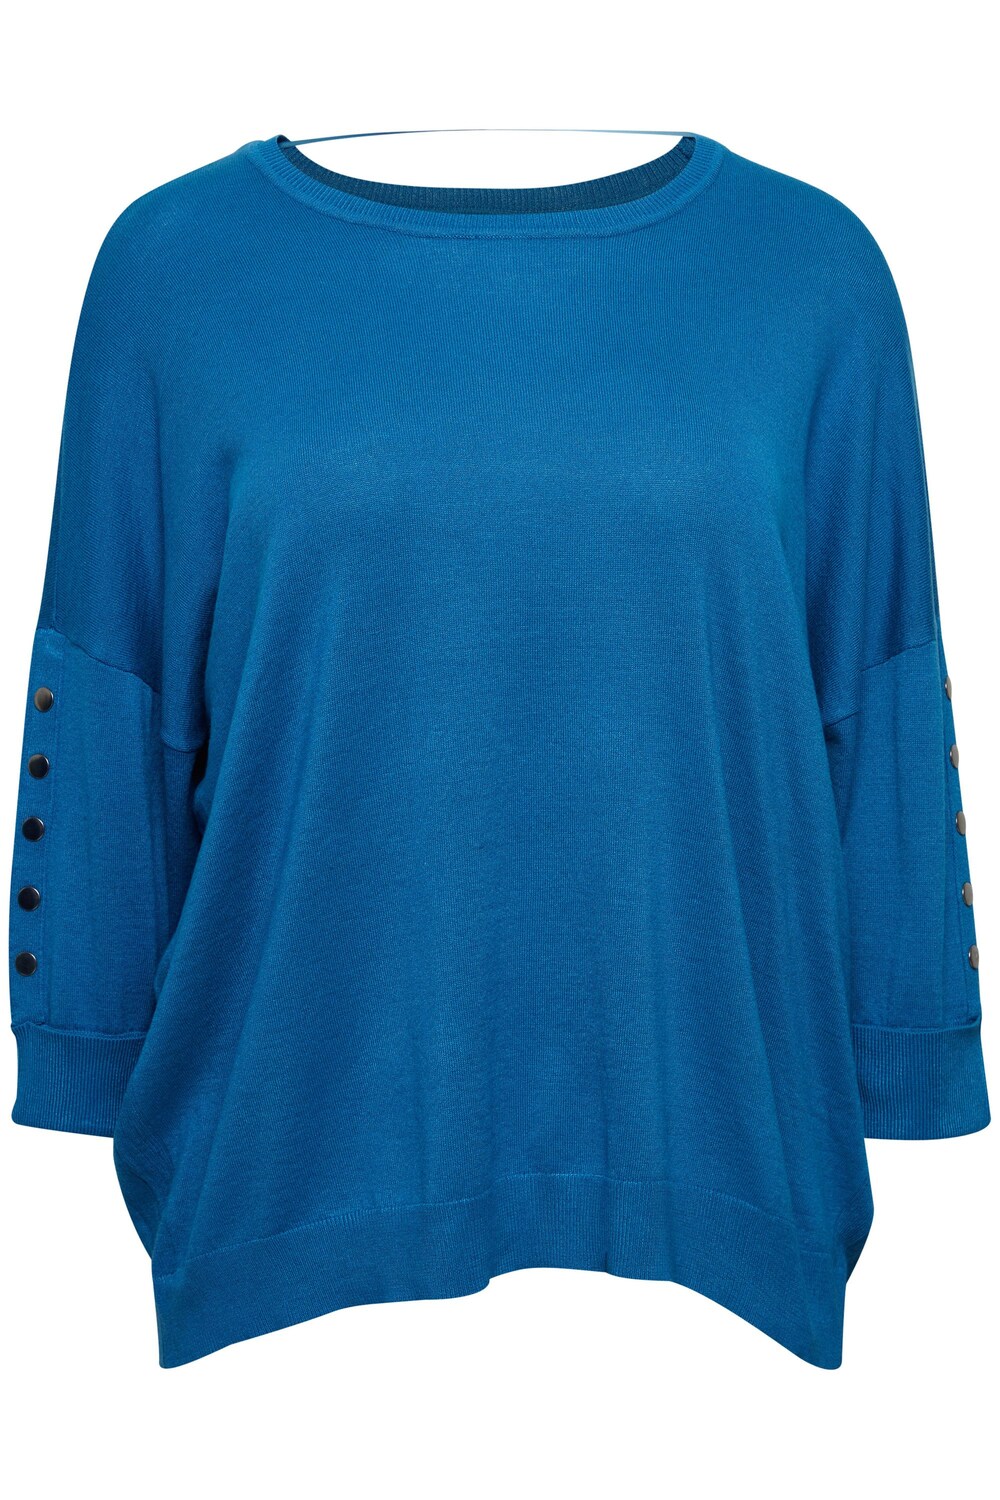 Рубашка Fransa Curve, синий платье fransa frbecardi 2 синий